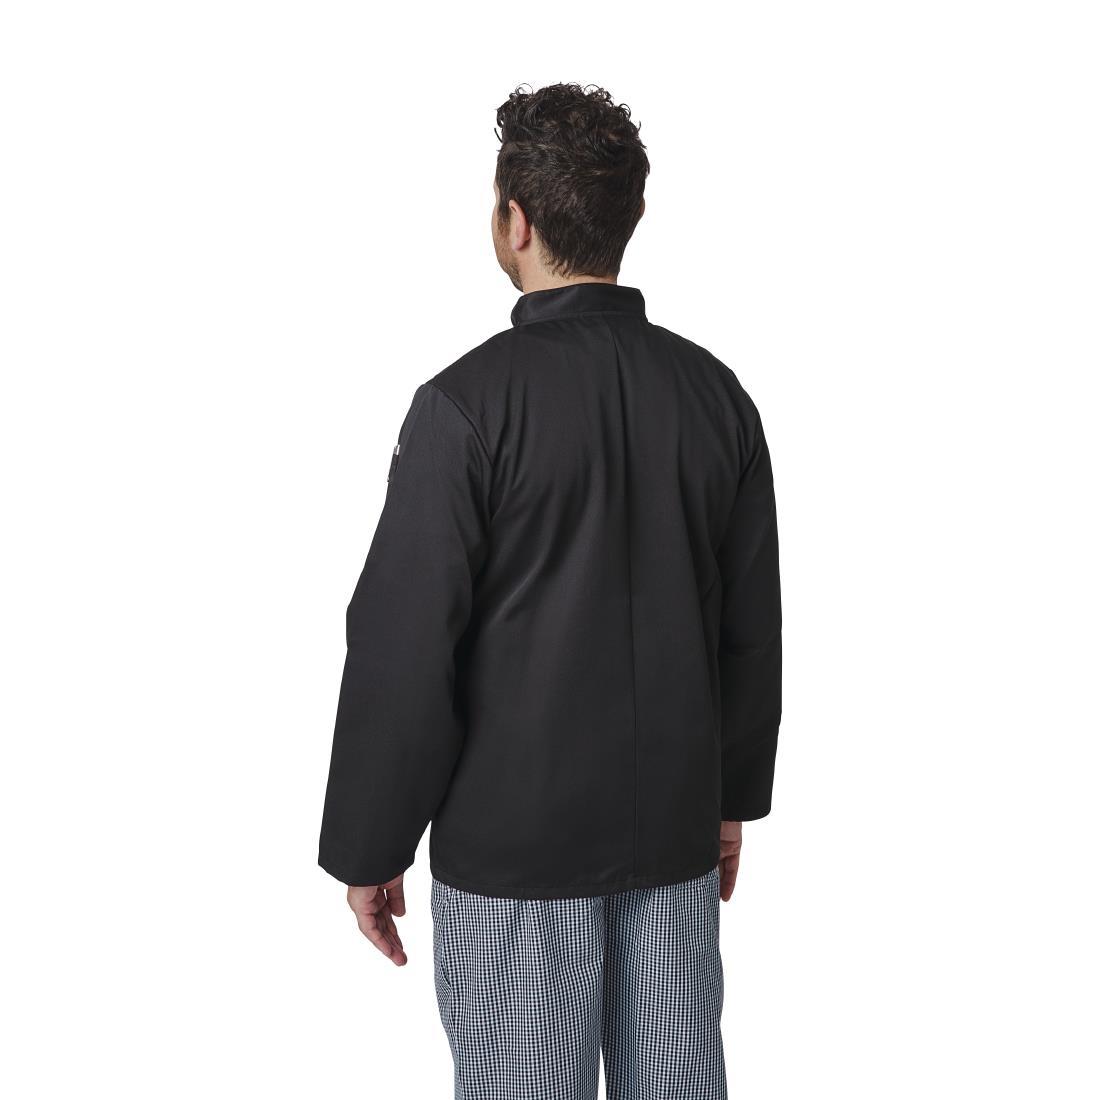 Whites Vegas Unisex Chefs Jacket Long Sleeve Black XL - A438-XL  - 6